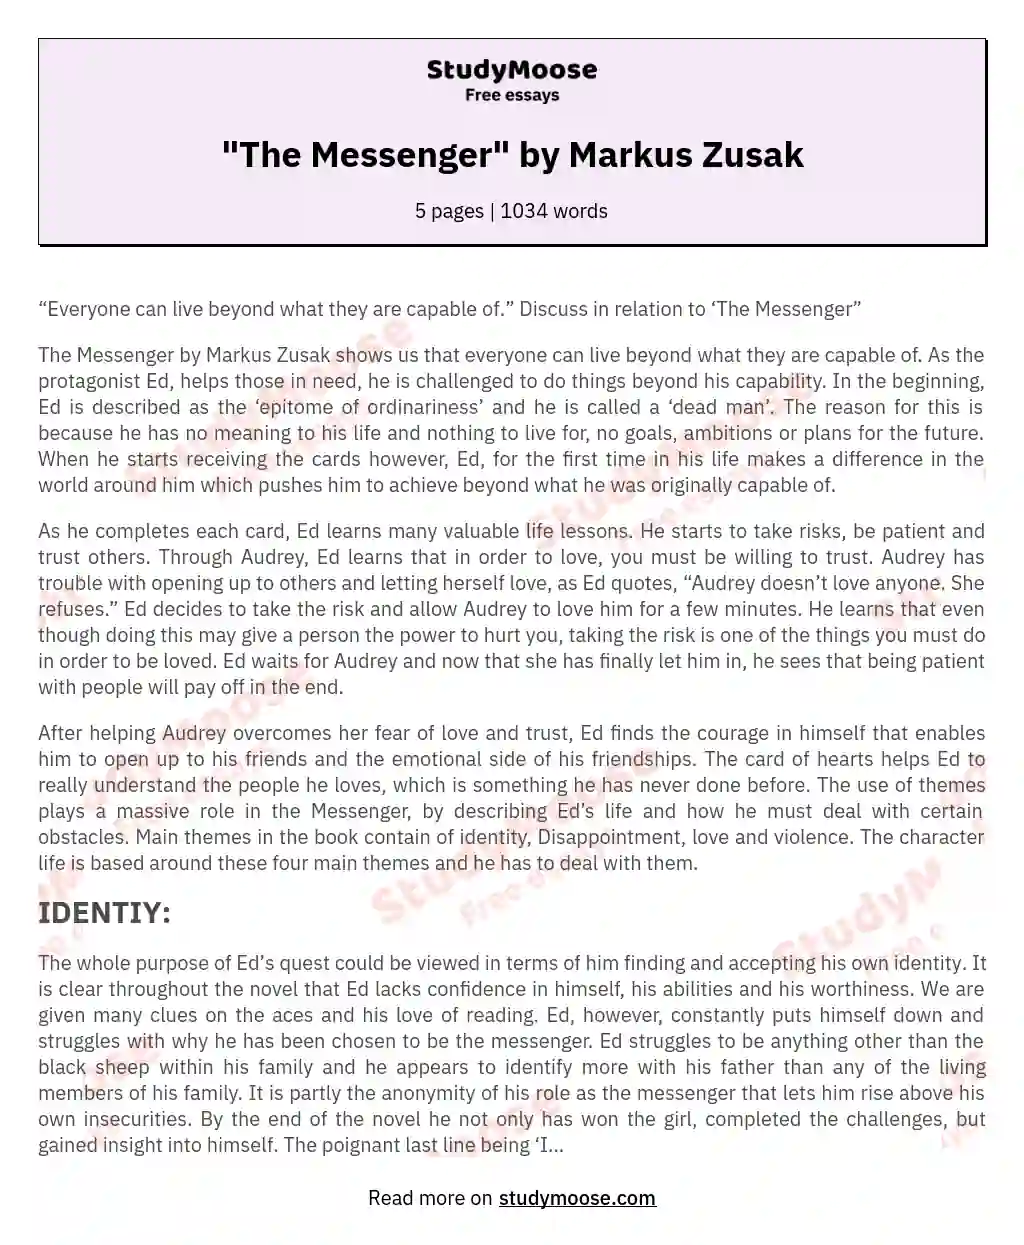 "The Messenger" by Markus Zusak